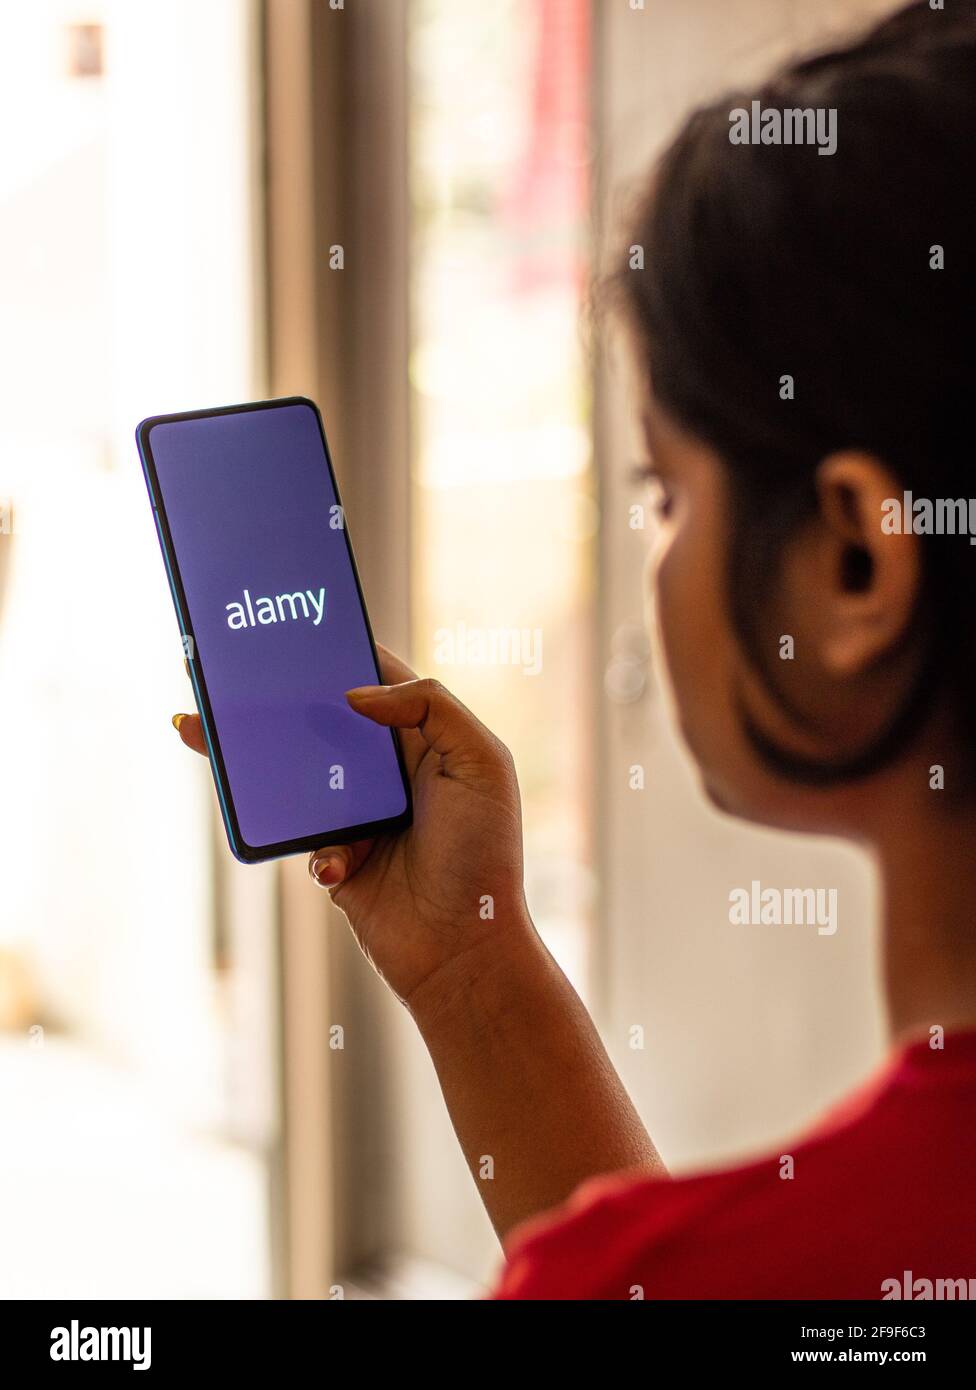 Assam, india - 19 Aprile 2021 : il logo di Alamy sull'immagine d'azione dello schermo del telefono. Foto Stock